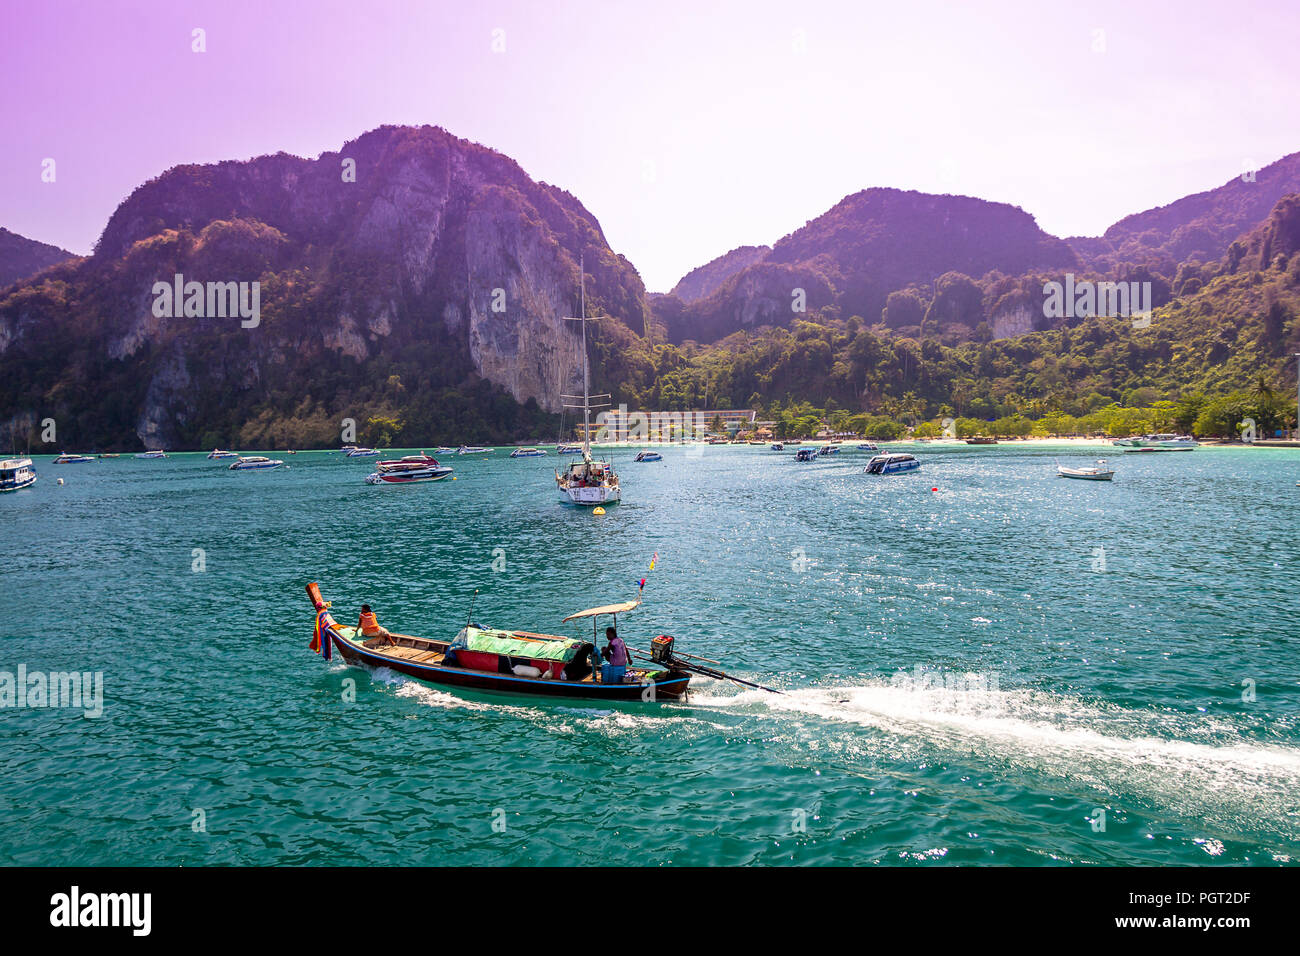 Un gruppo di barche in distanza con un piccolo uno andando con la sua scia seguenti. La Thailandia è occupato con barche e scogli di roccia in una giornata di sole. Foto Stock